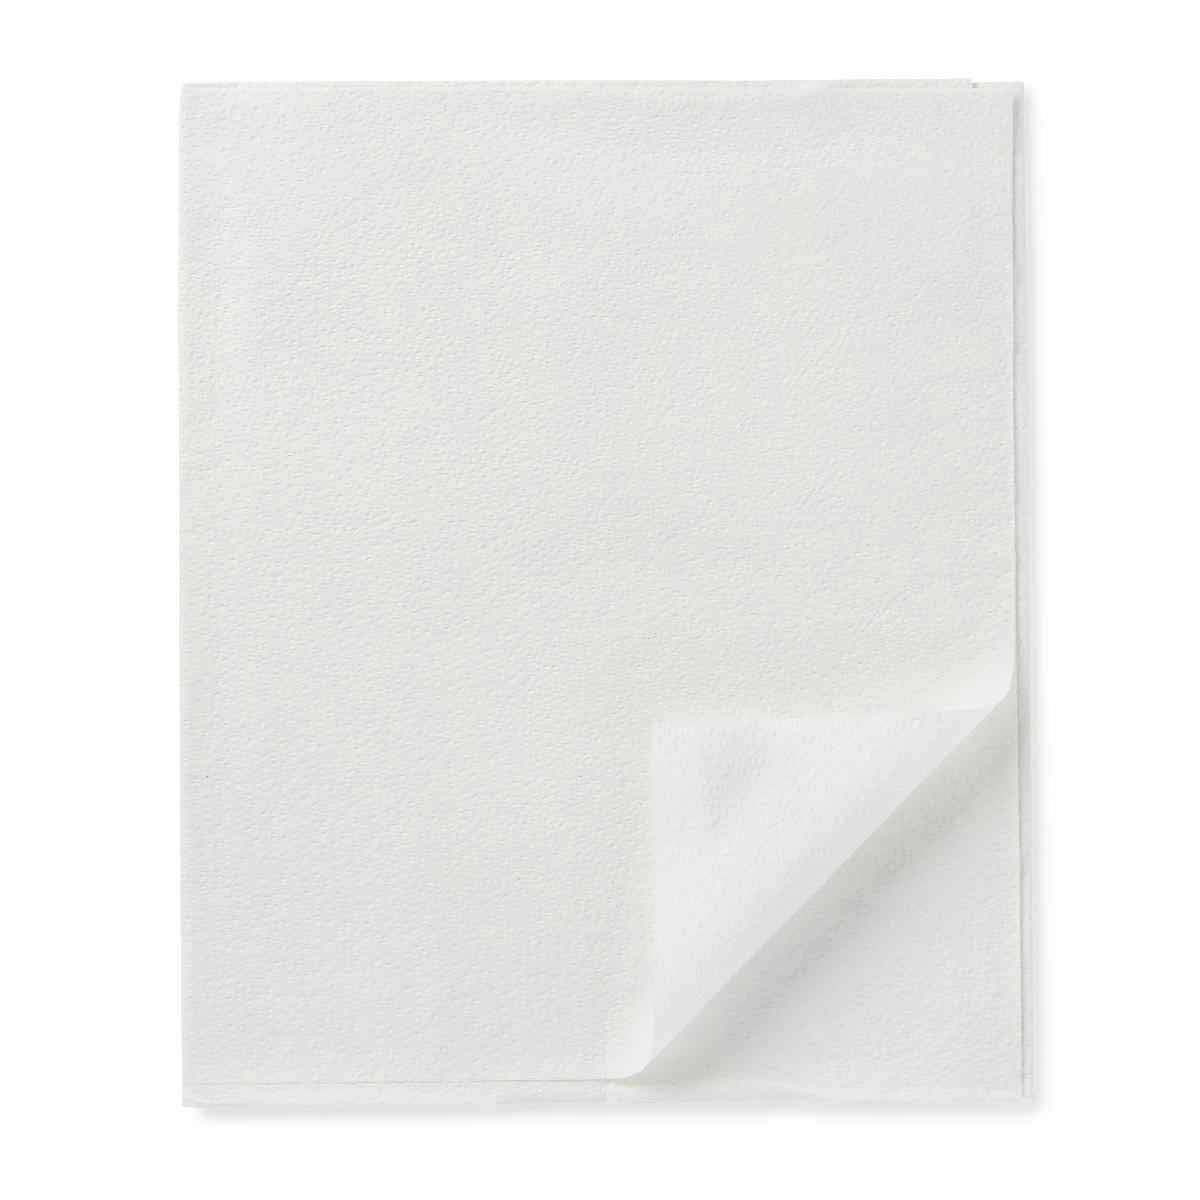 Medline Deluxe 2-Ply Tissue Drape Sheets, NON23339, White - 40" X 48" - Case of 100